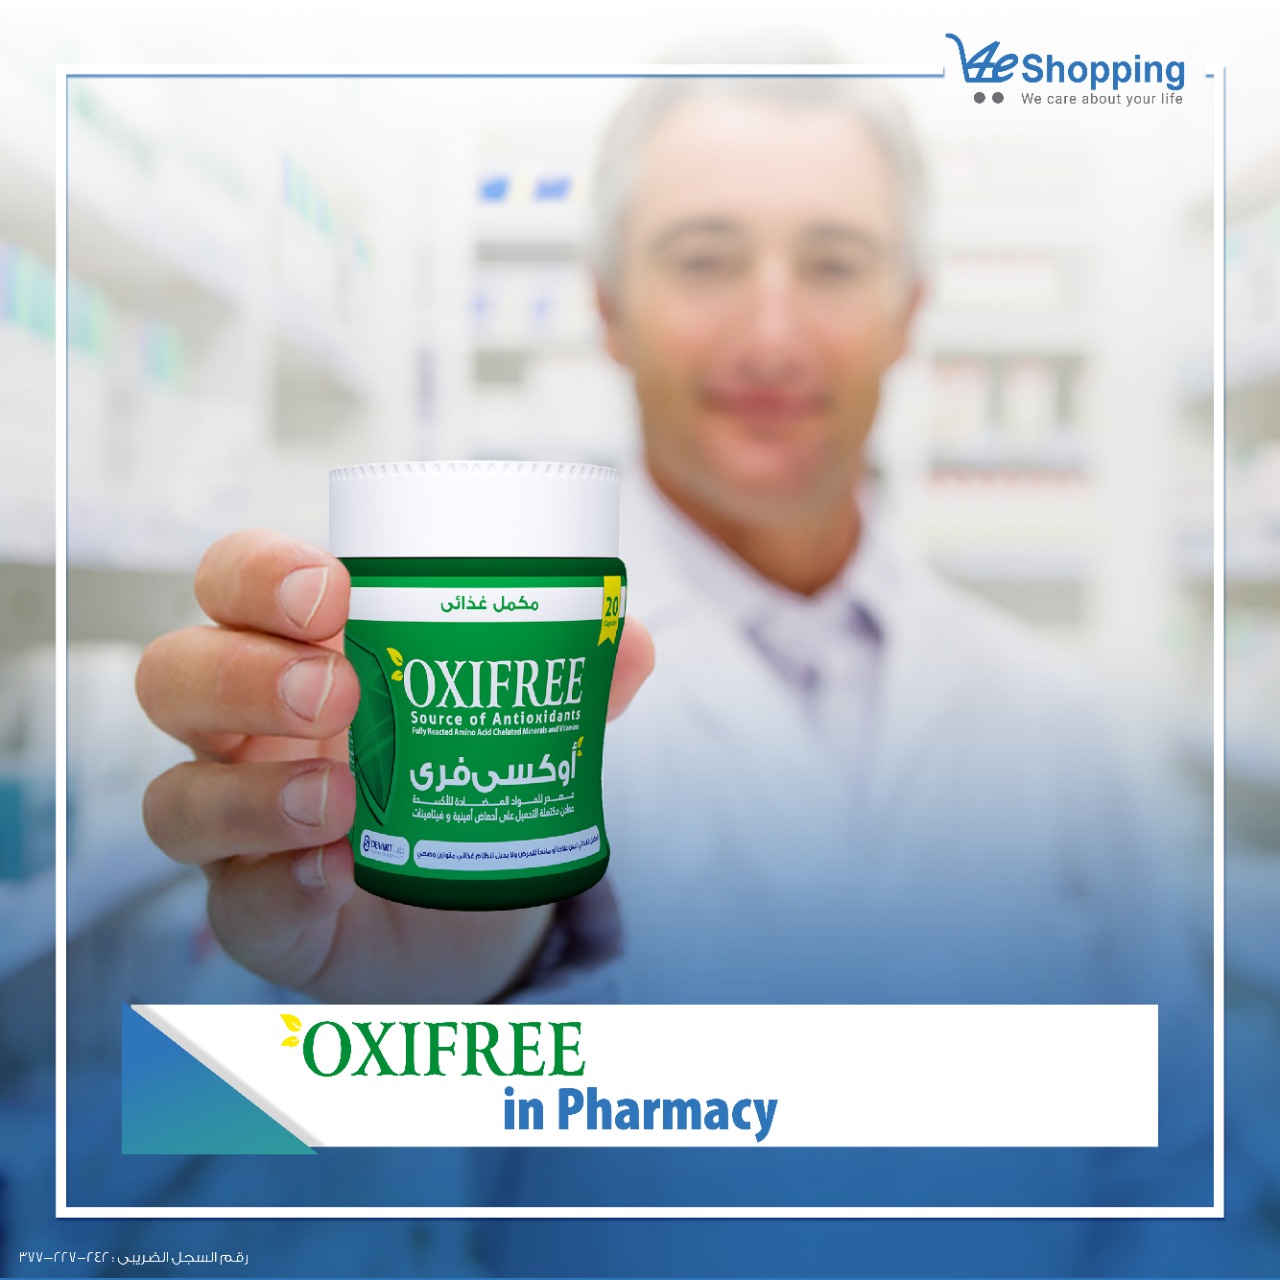 Oxifree in Pharmacy